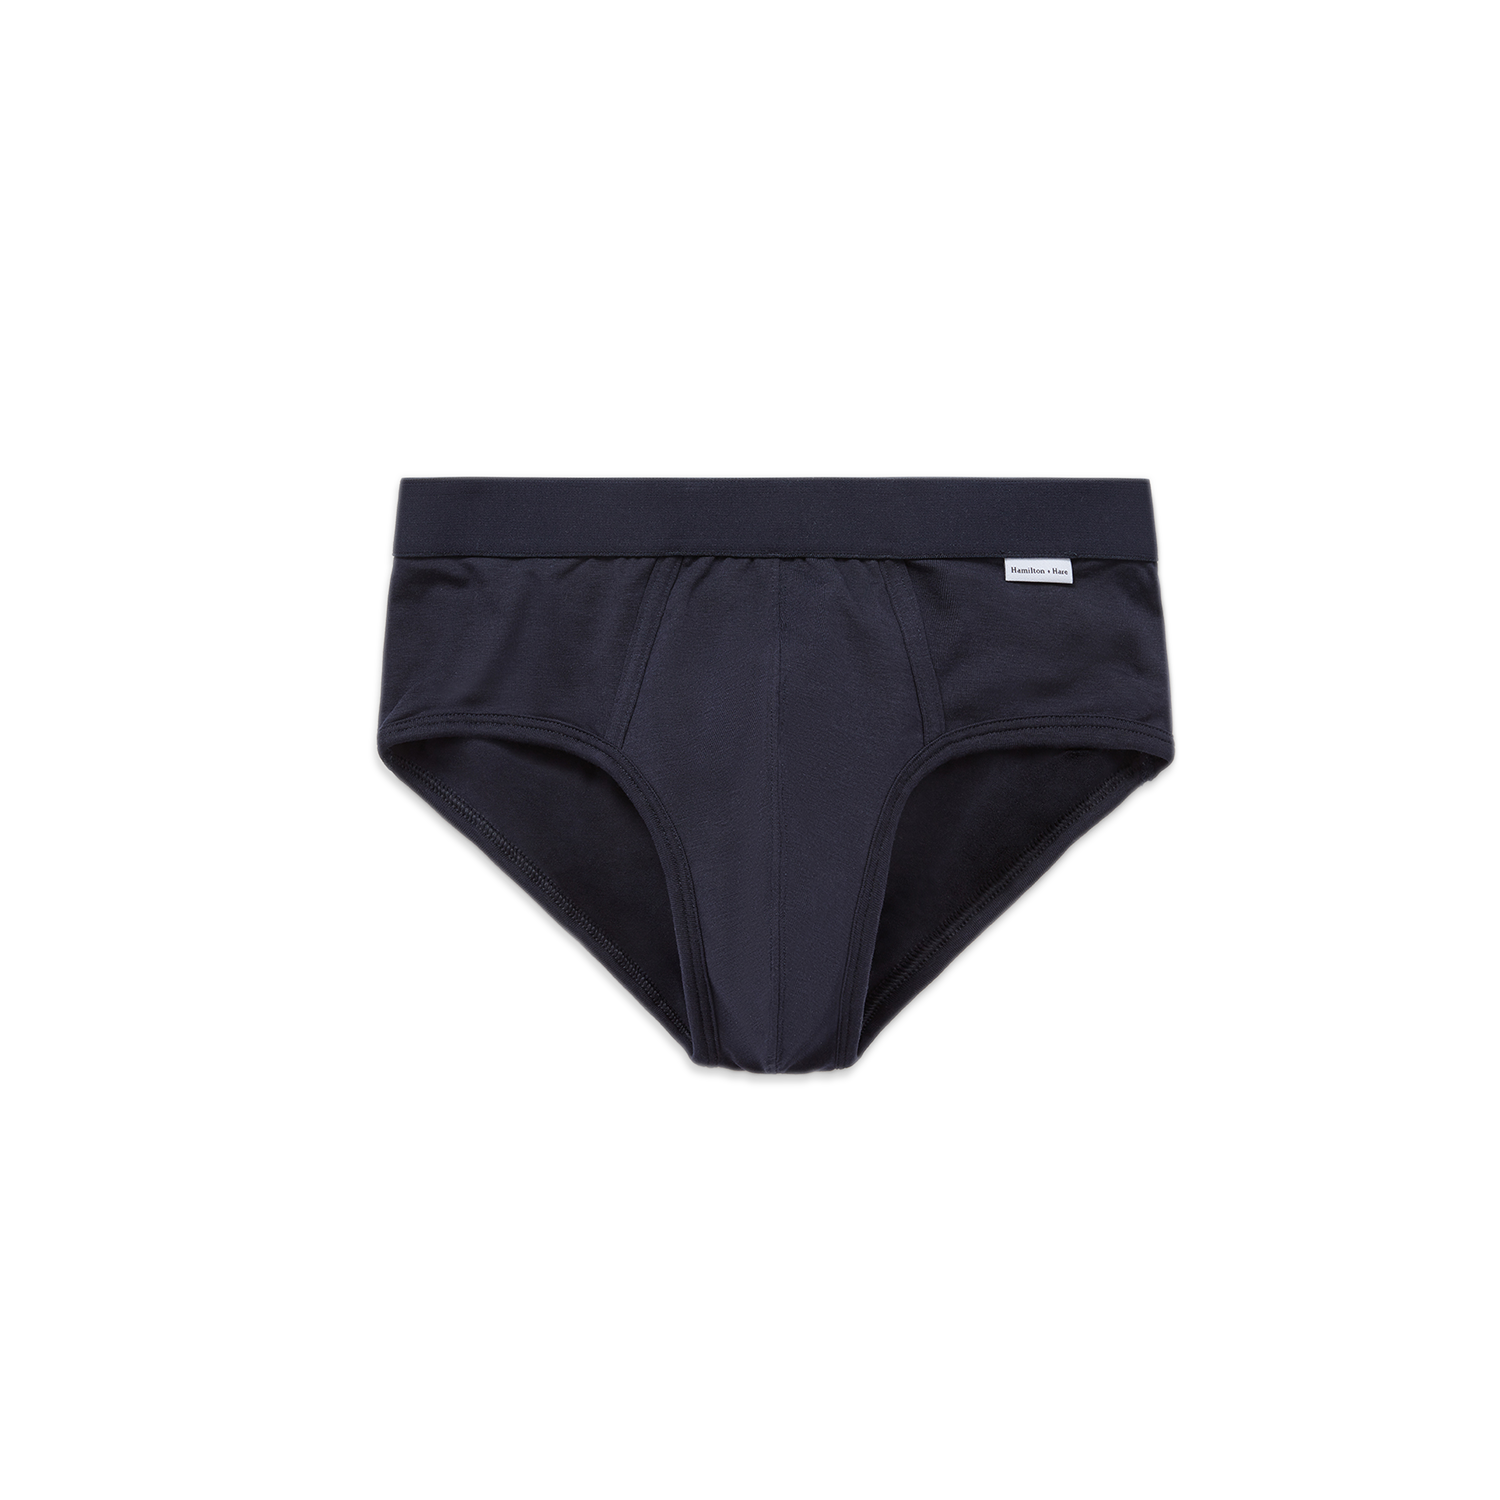 Prince Brief Grey - Men's Luxury Underwear